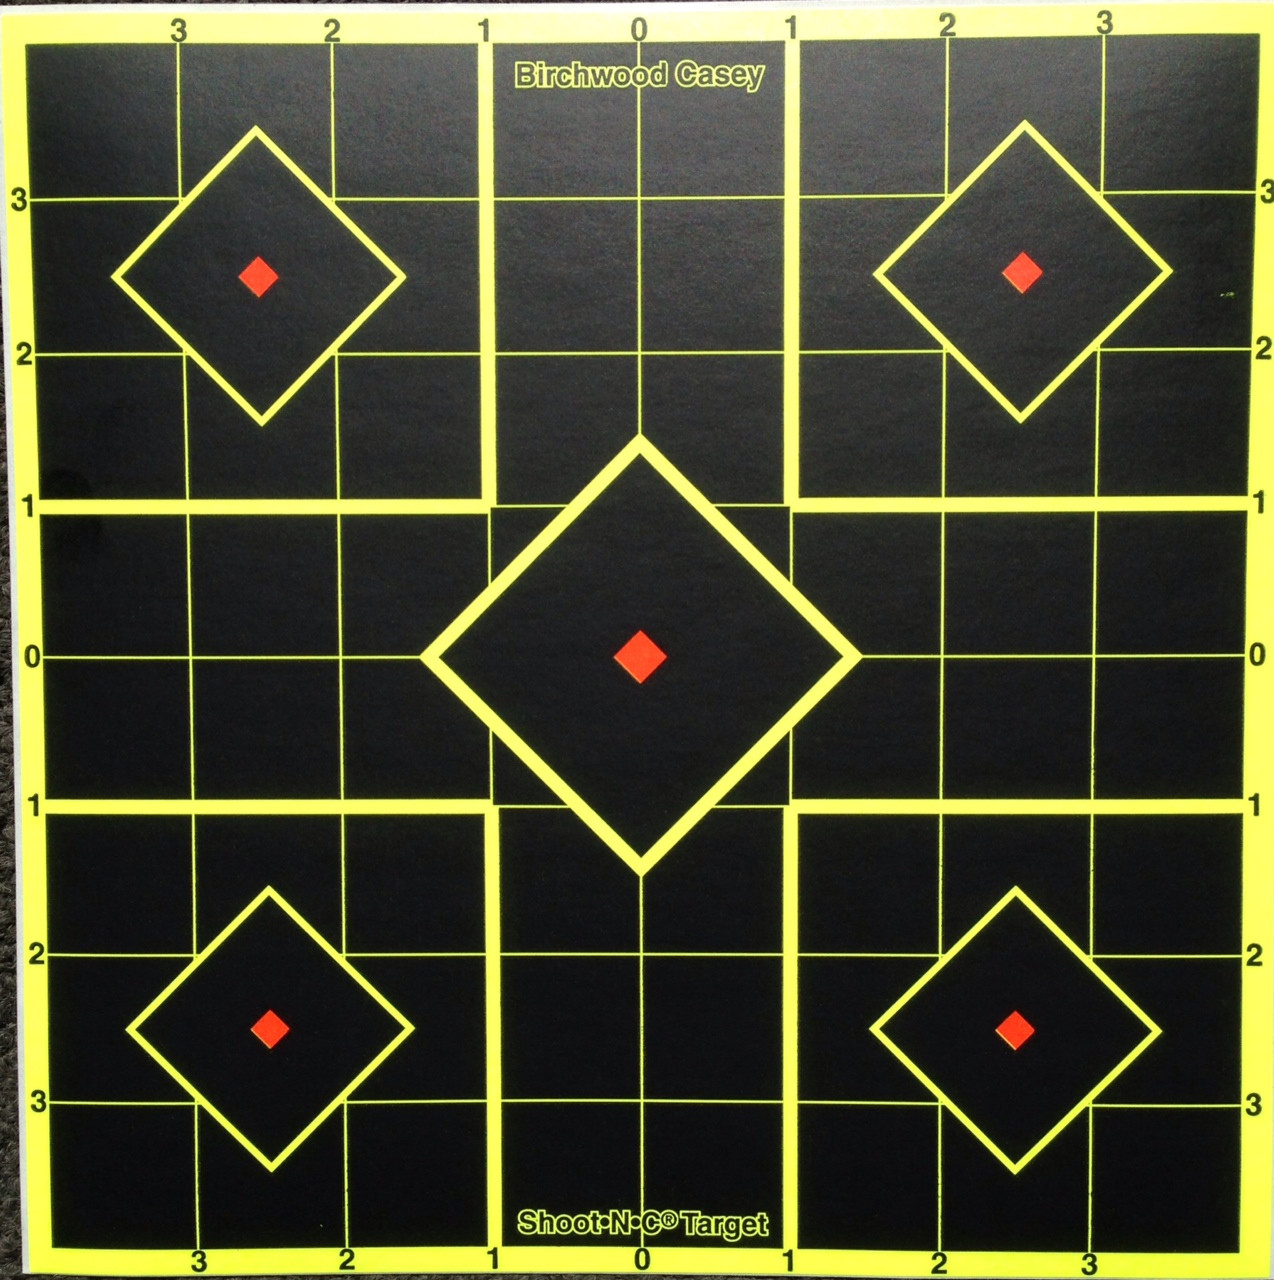 Shoot-N-C 8" Square Grid 15 Pack Shooting Target